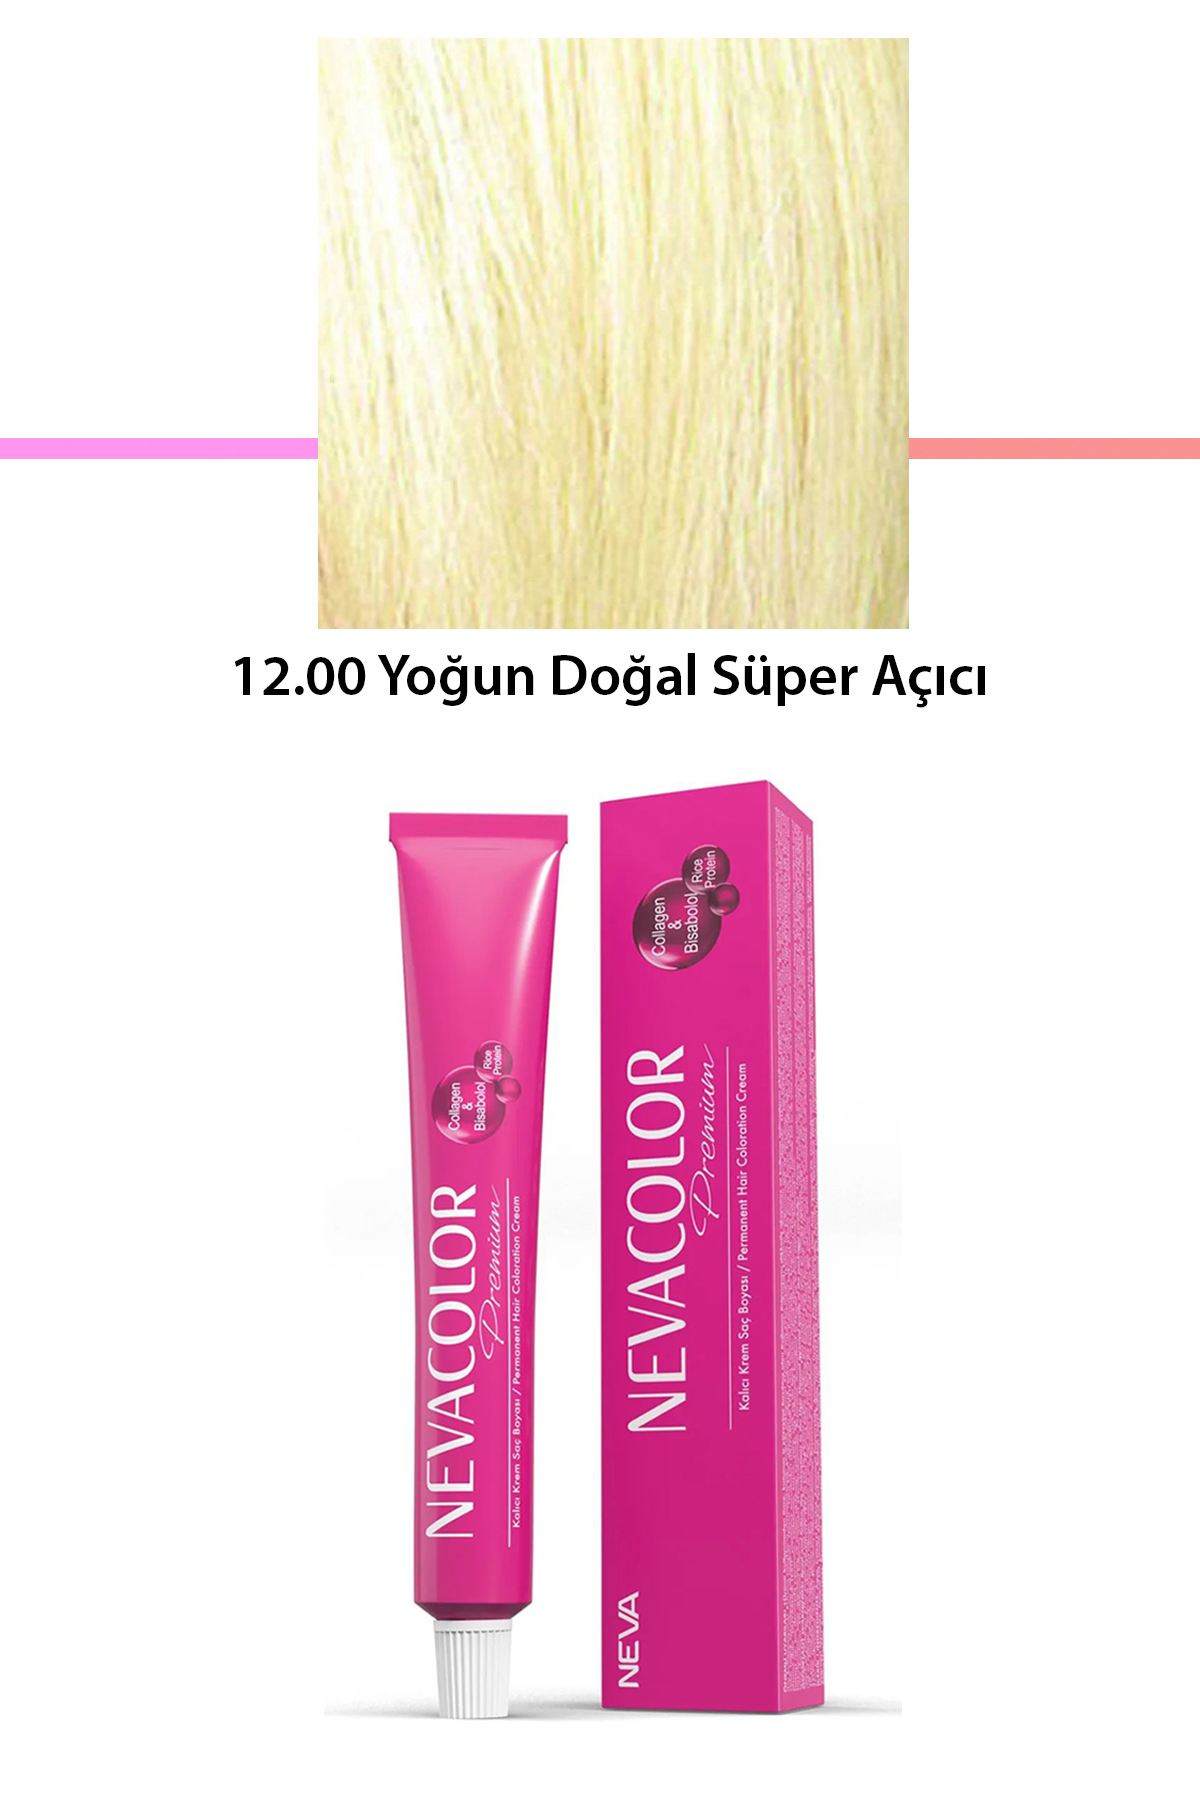 Premium 12.00 Yoğun Doğal Süper Açıcı - Kalıcı Krem Saç Boyası 50 g Tüp